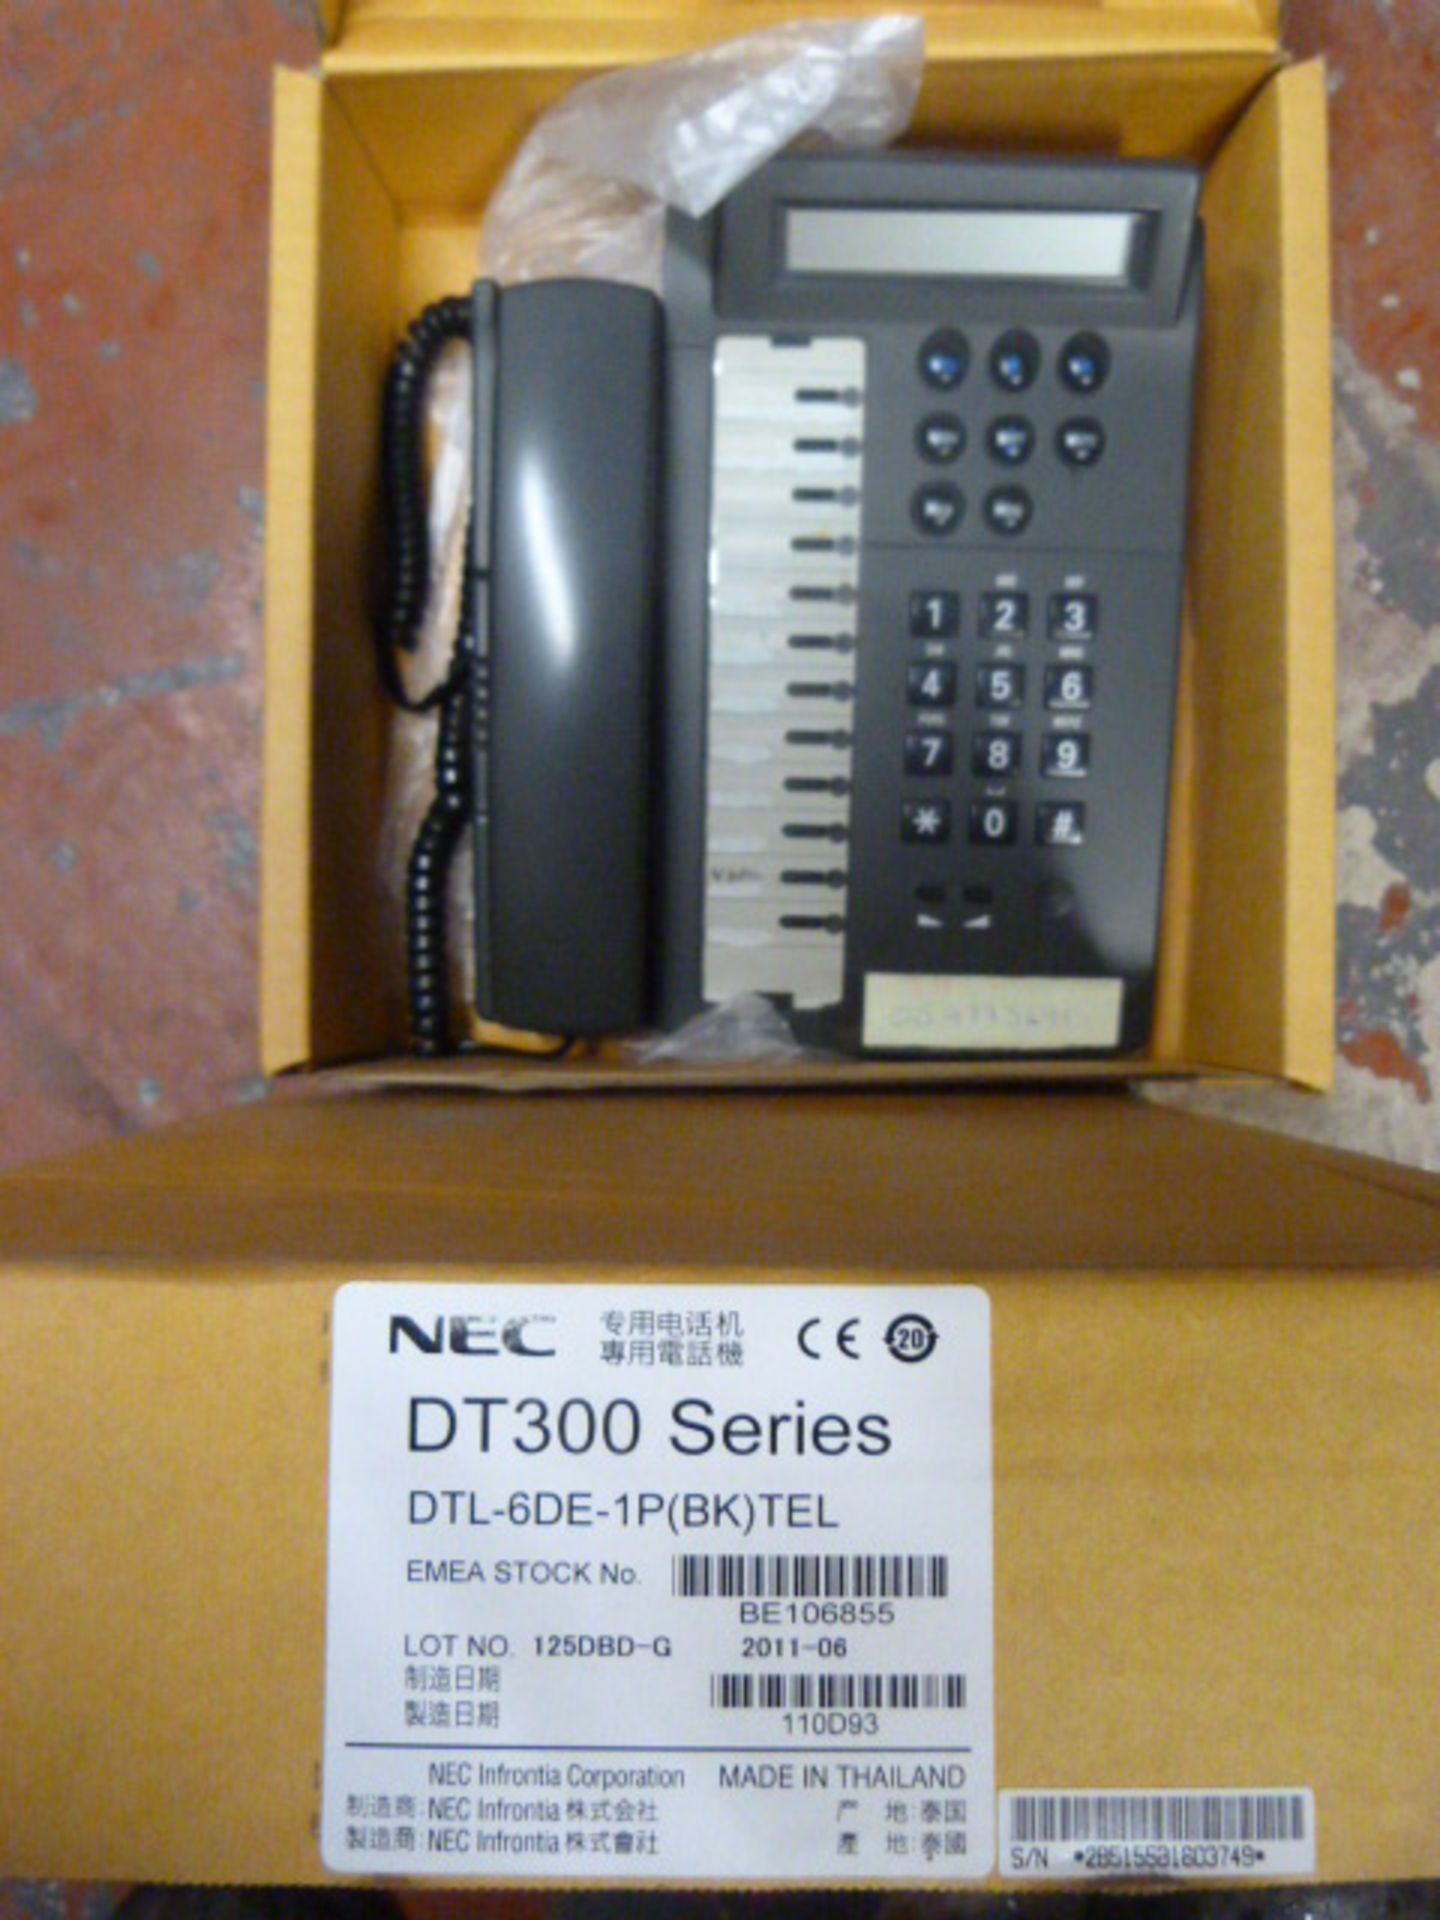 *Six Nec DT300 Series Telephones